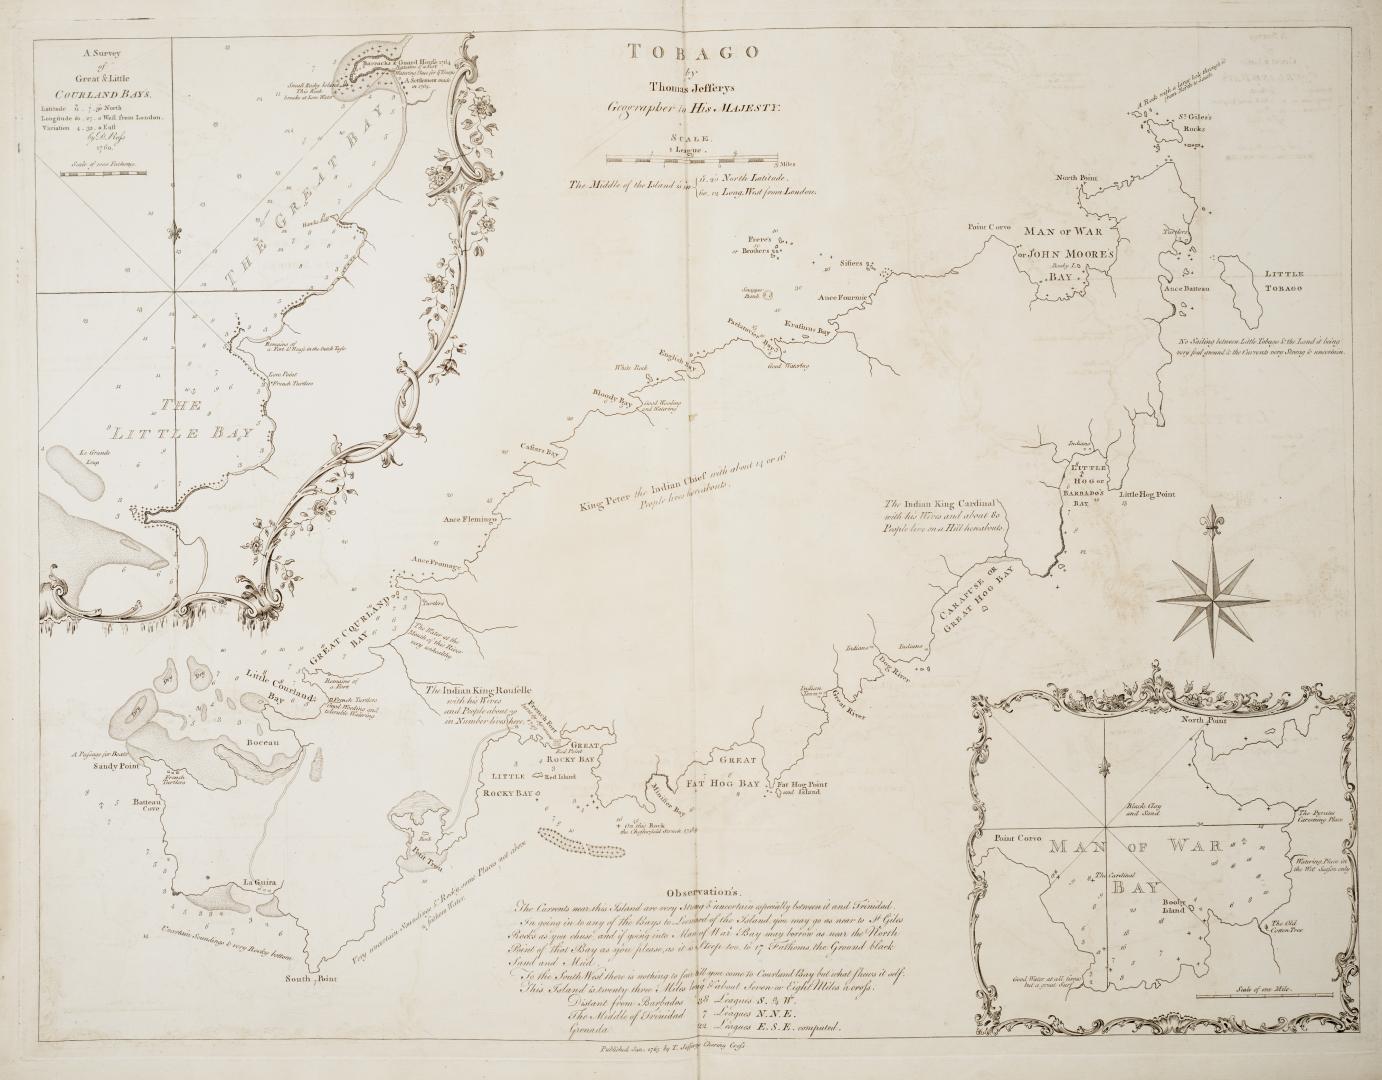 Tobago by Thomas Jefferys, Geographer to his Majesty